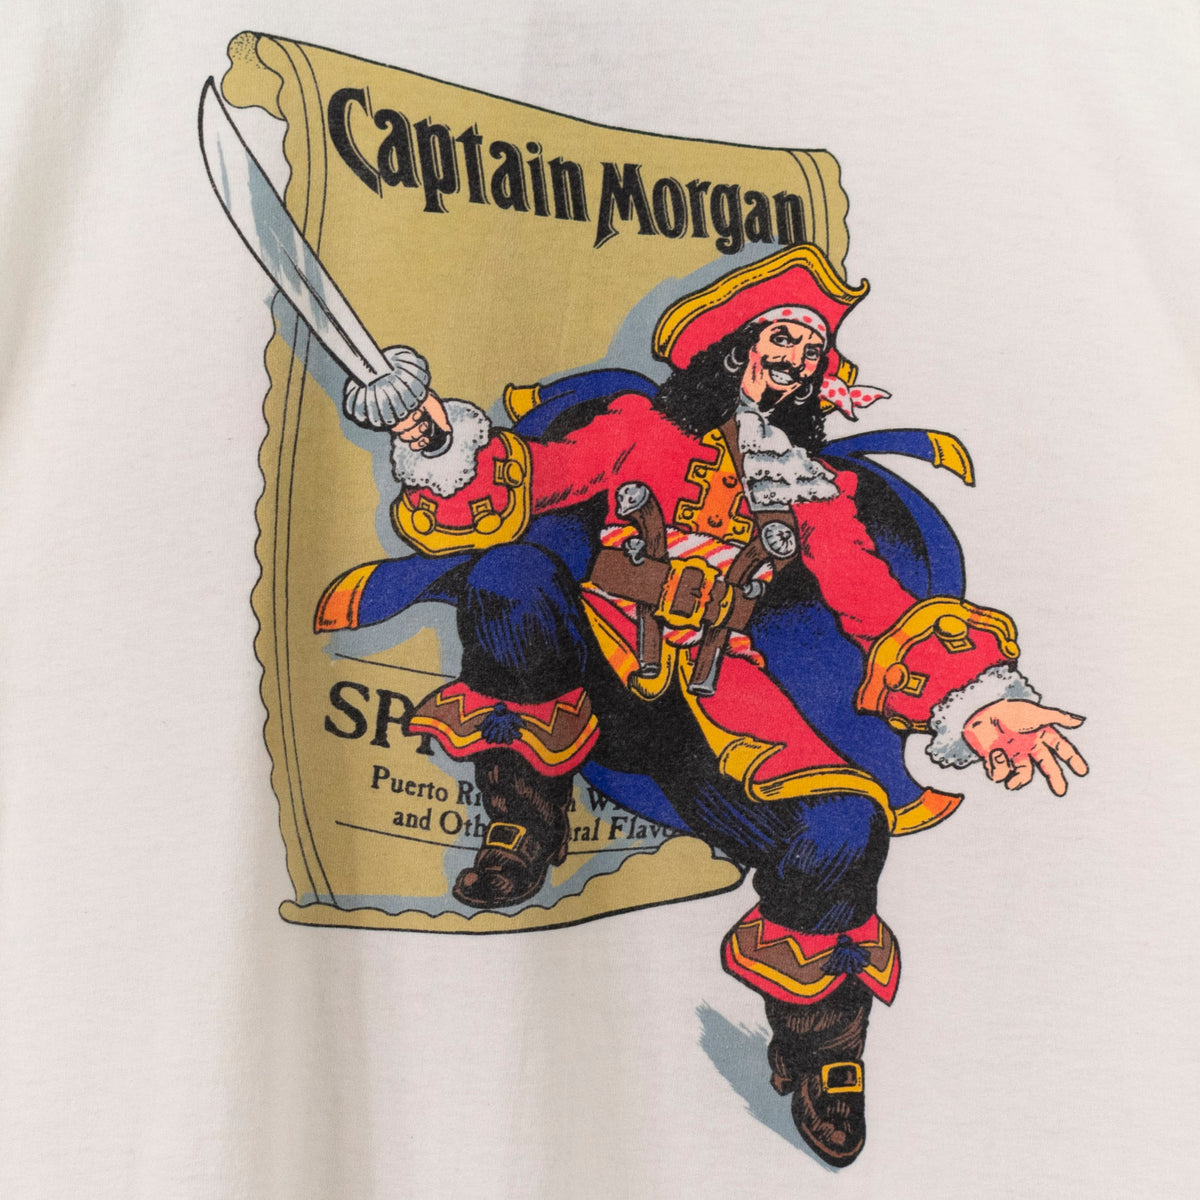 captain morgan logo